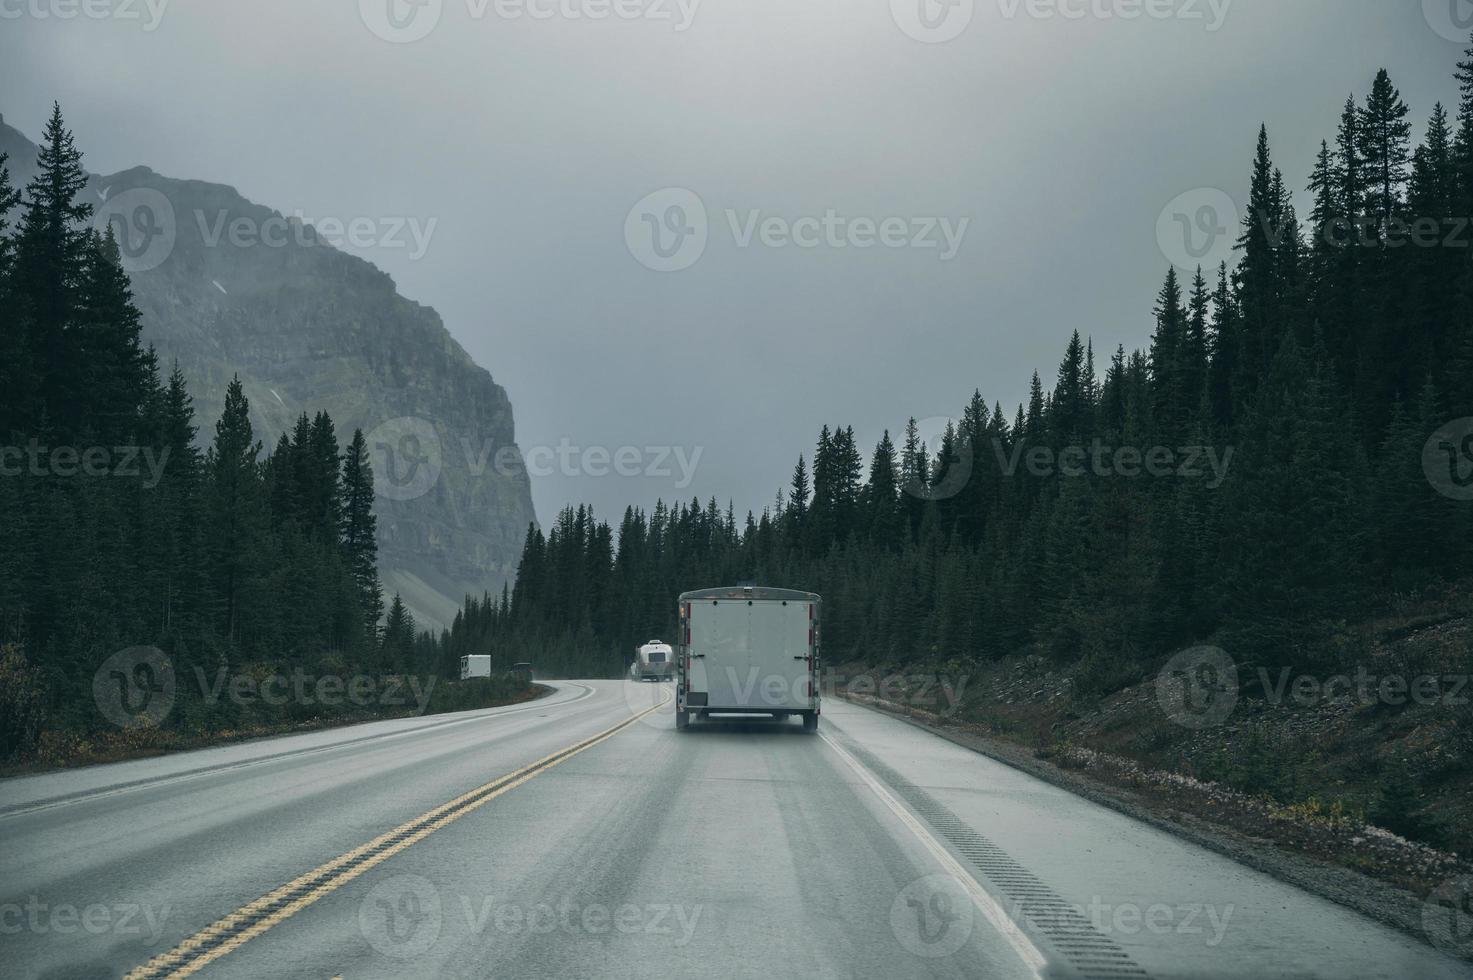 voyage en voiture en voiture dans une forêt de pins avec des montagnes rocheuses sombres au parc national banff photo